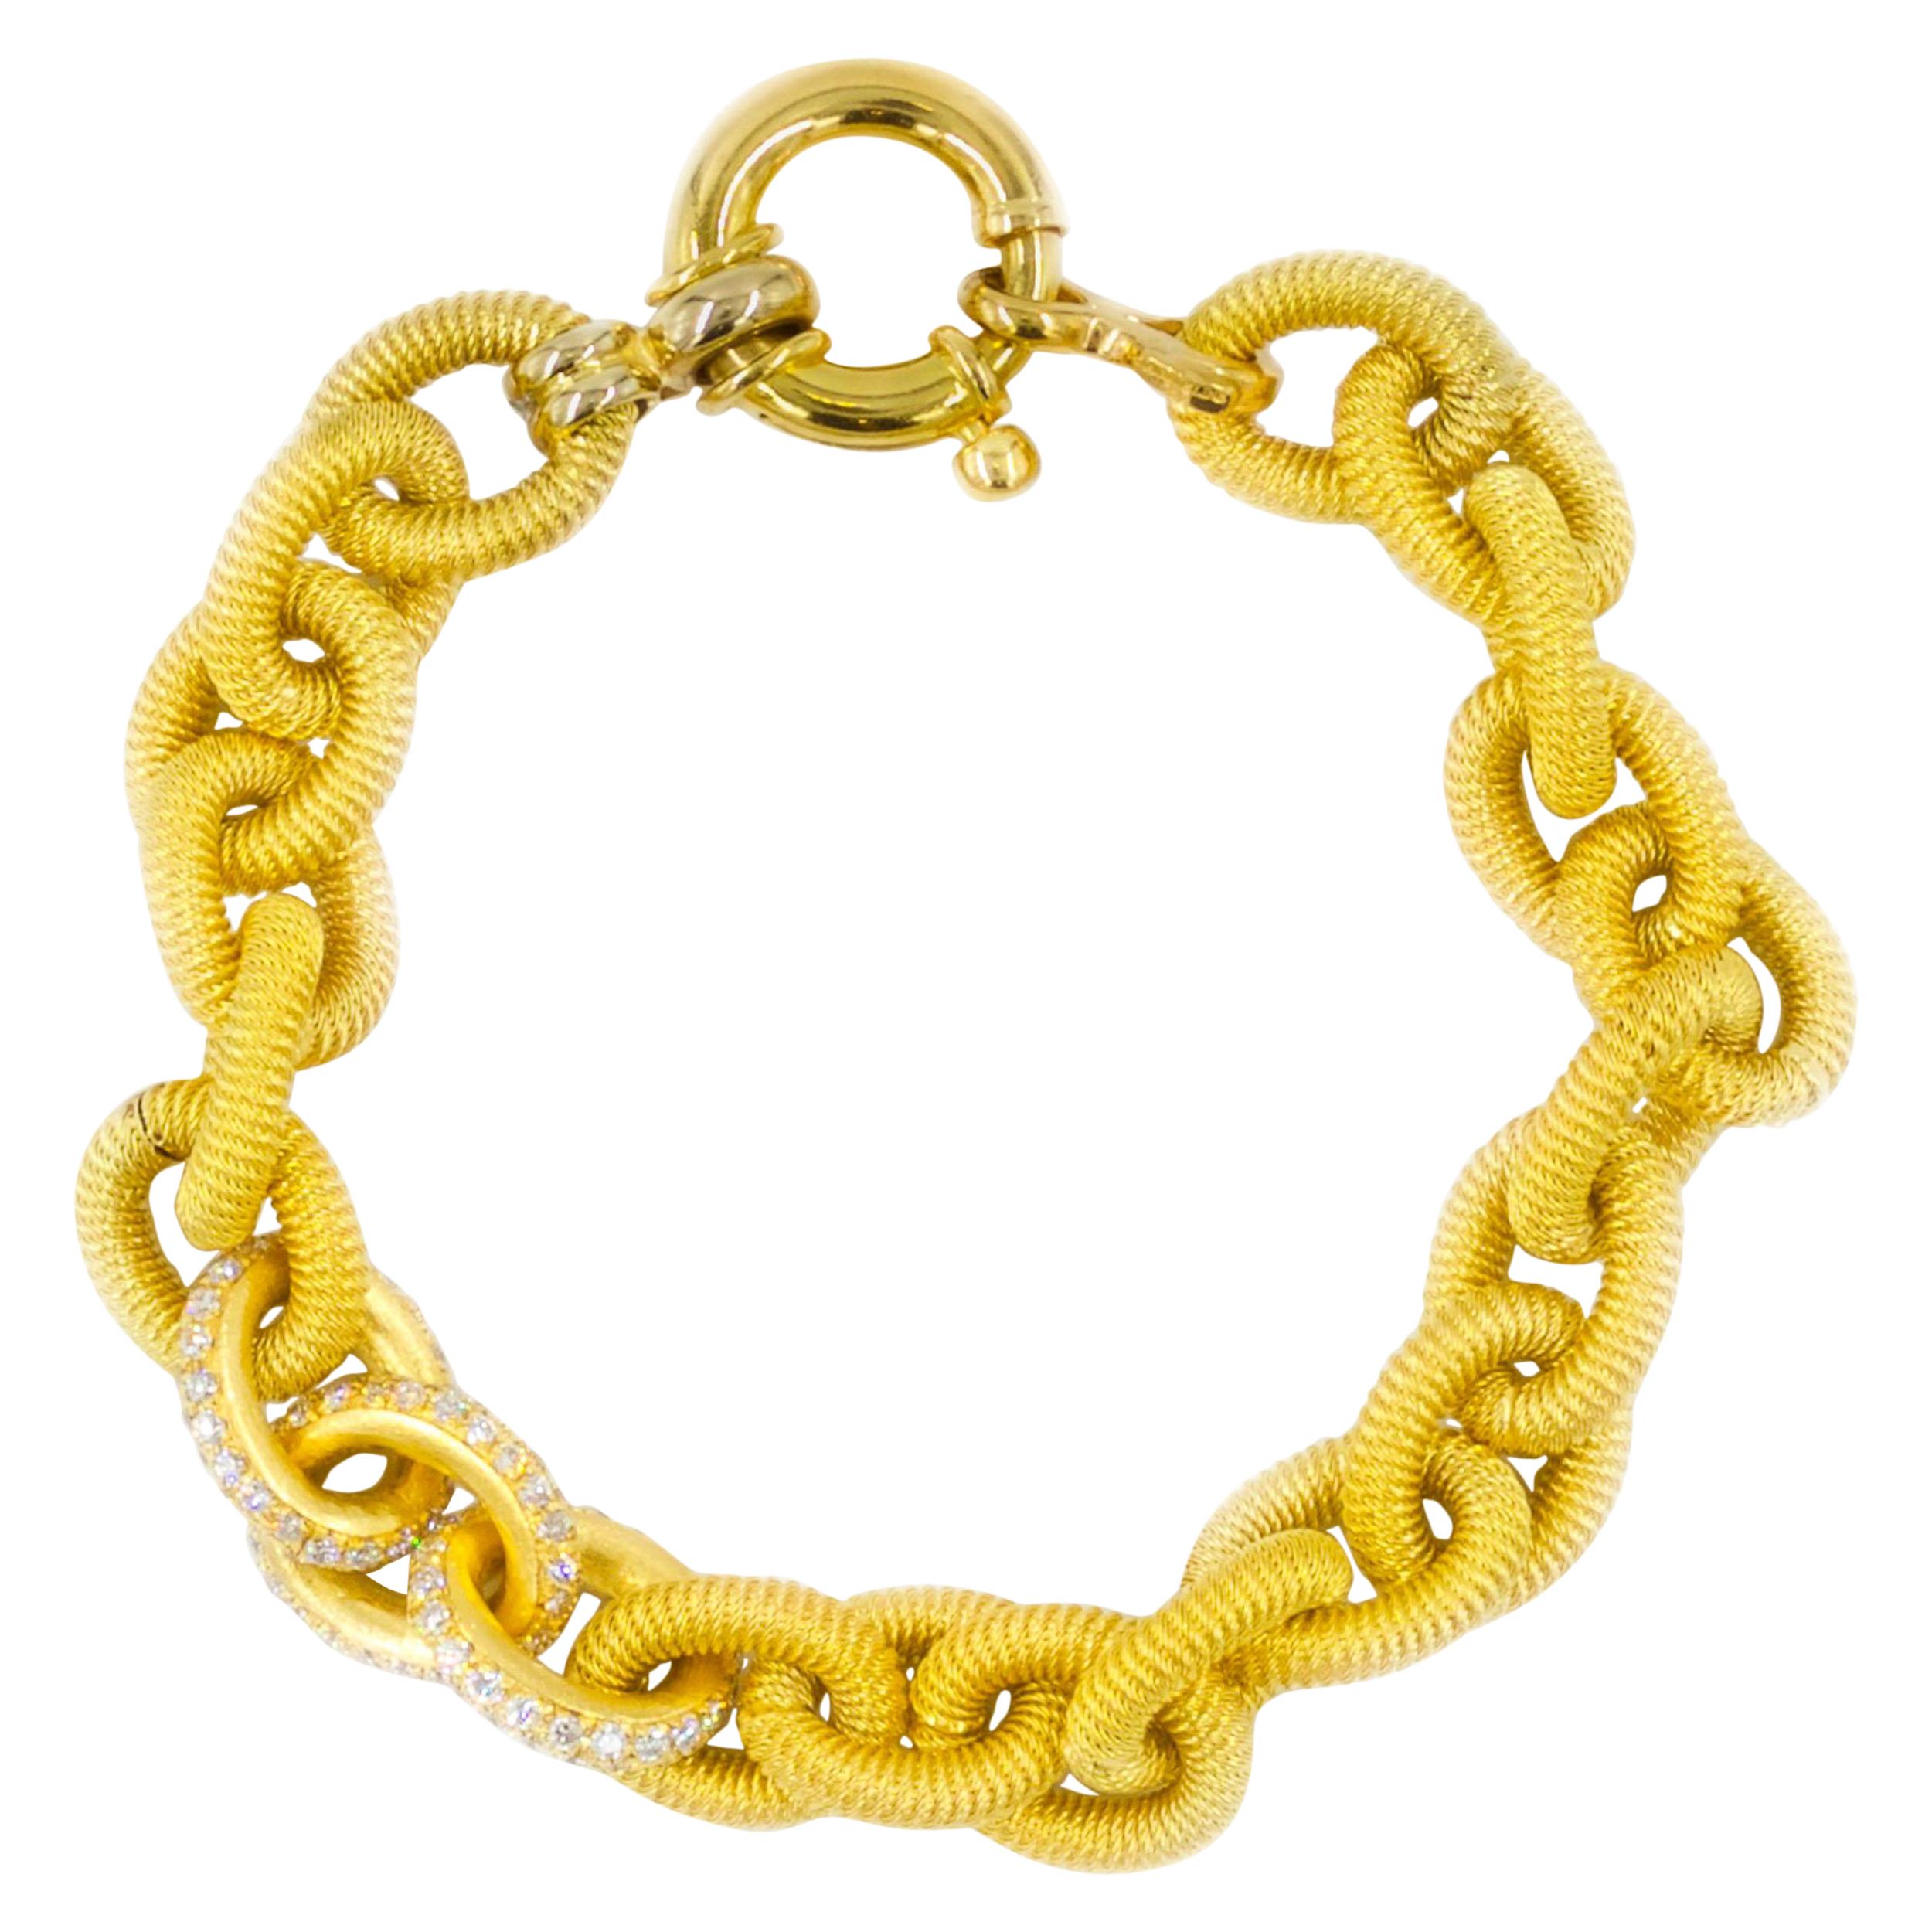 Estate Italian 18k Yellow Gold Open-Link Bracelet w/ 138 Diamonds